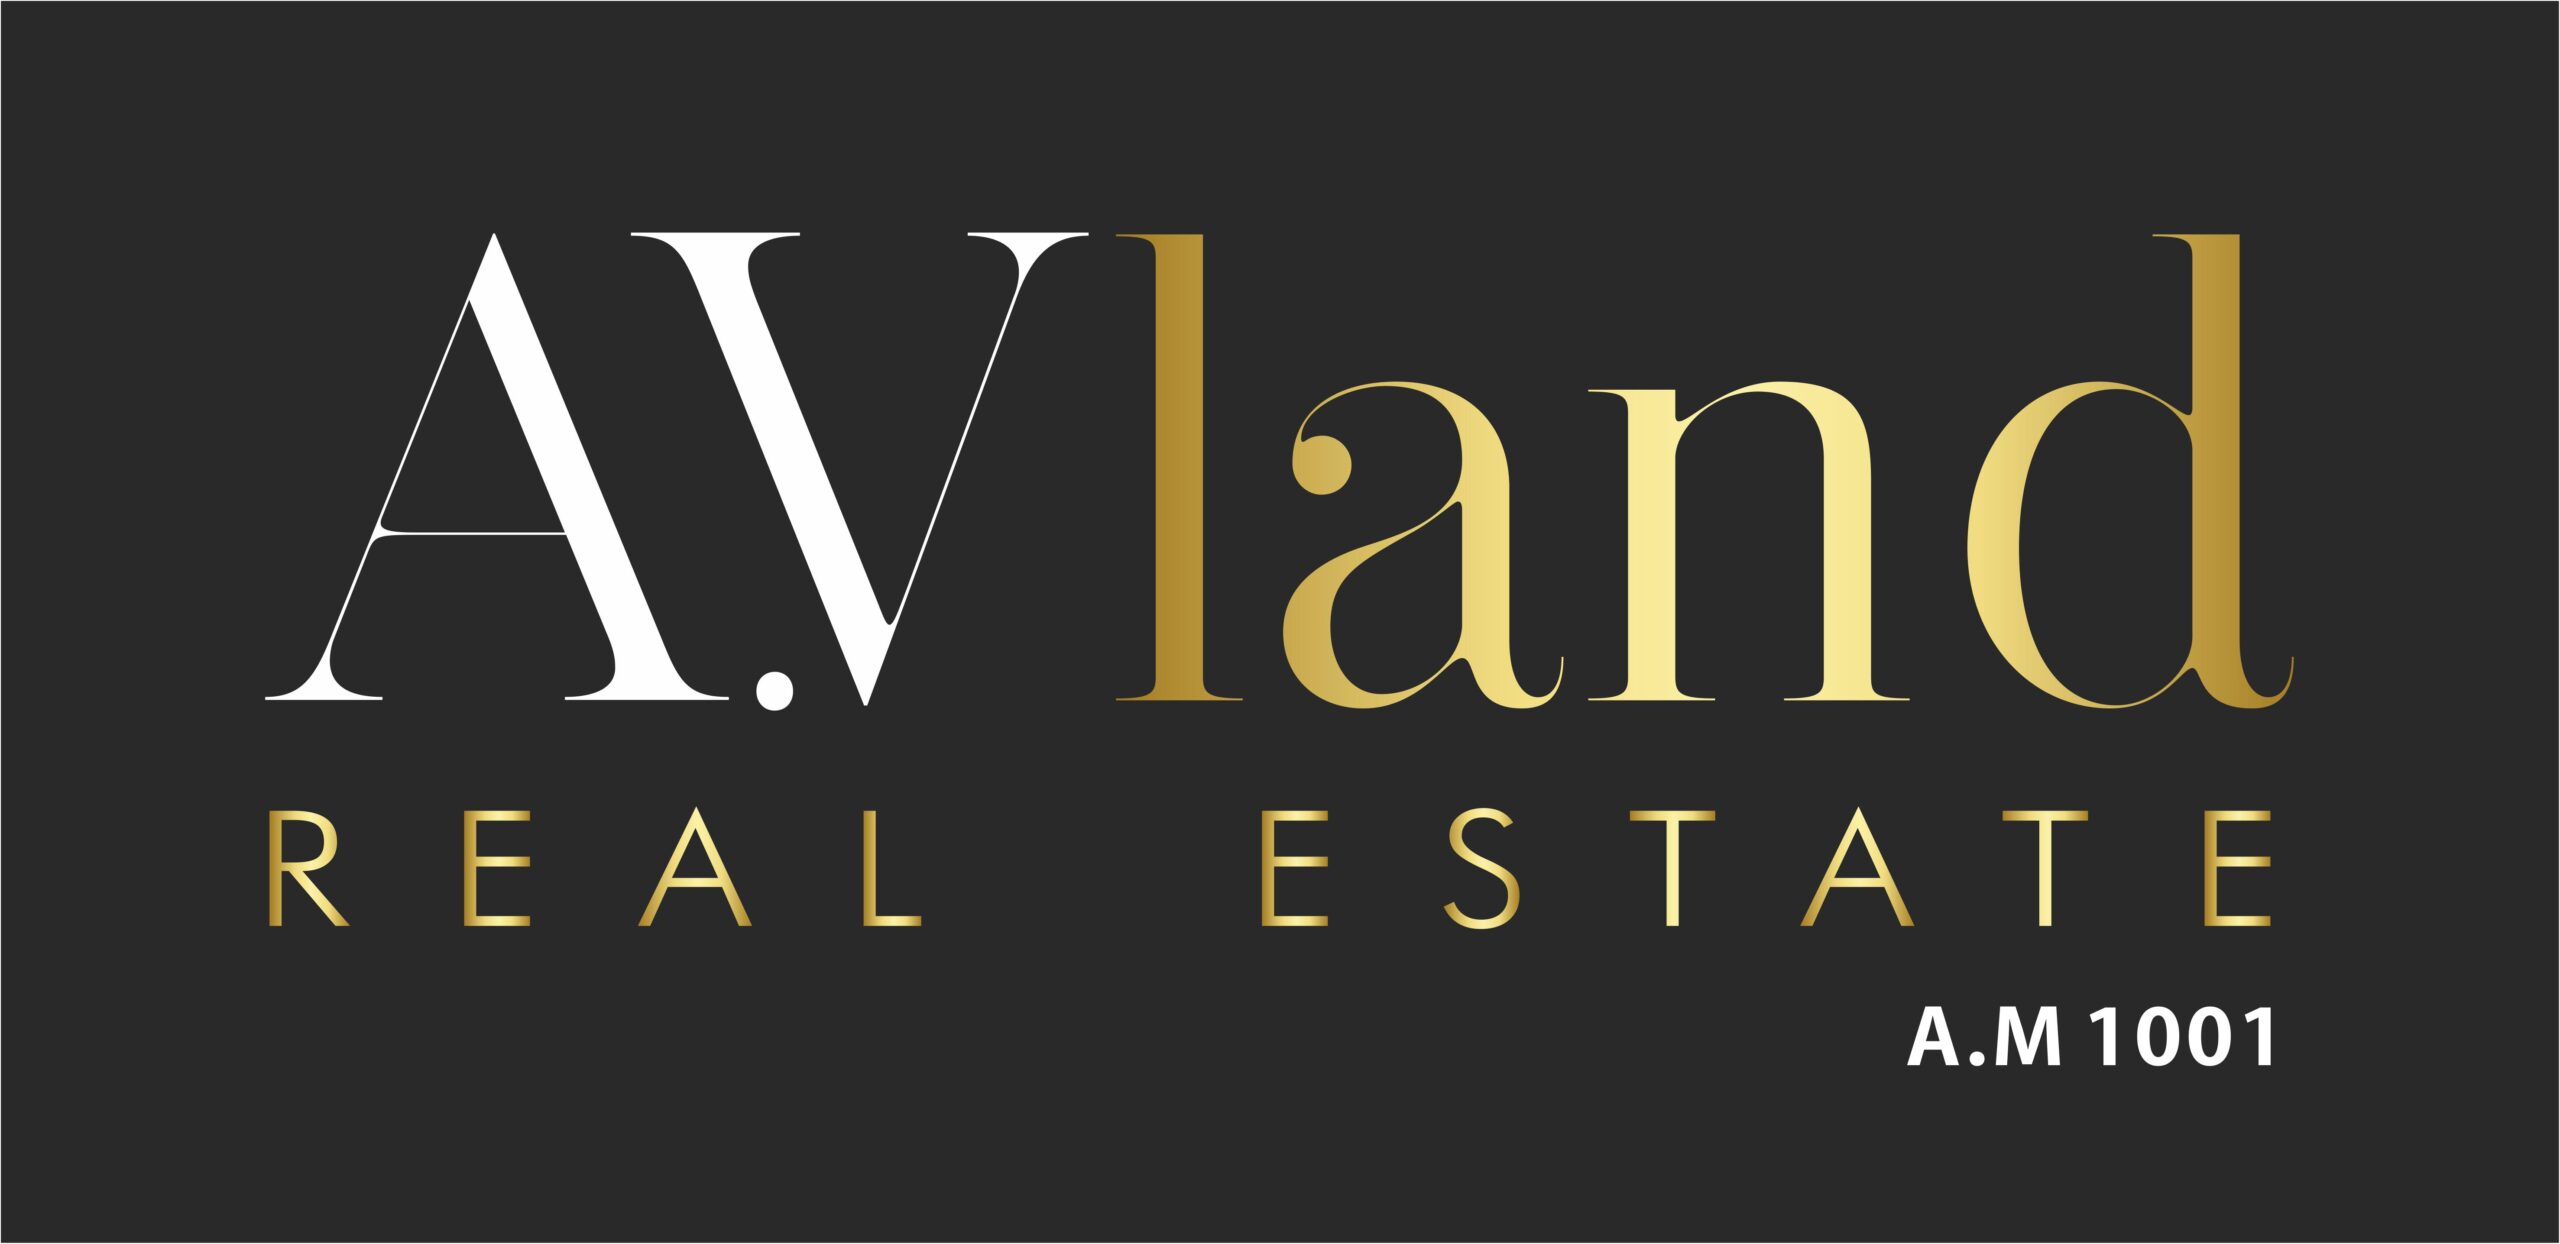 AV Land Real Estate